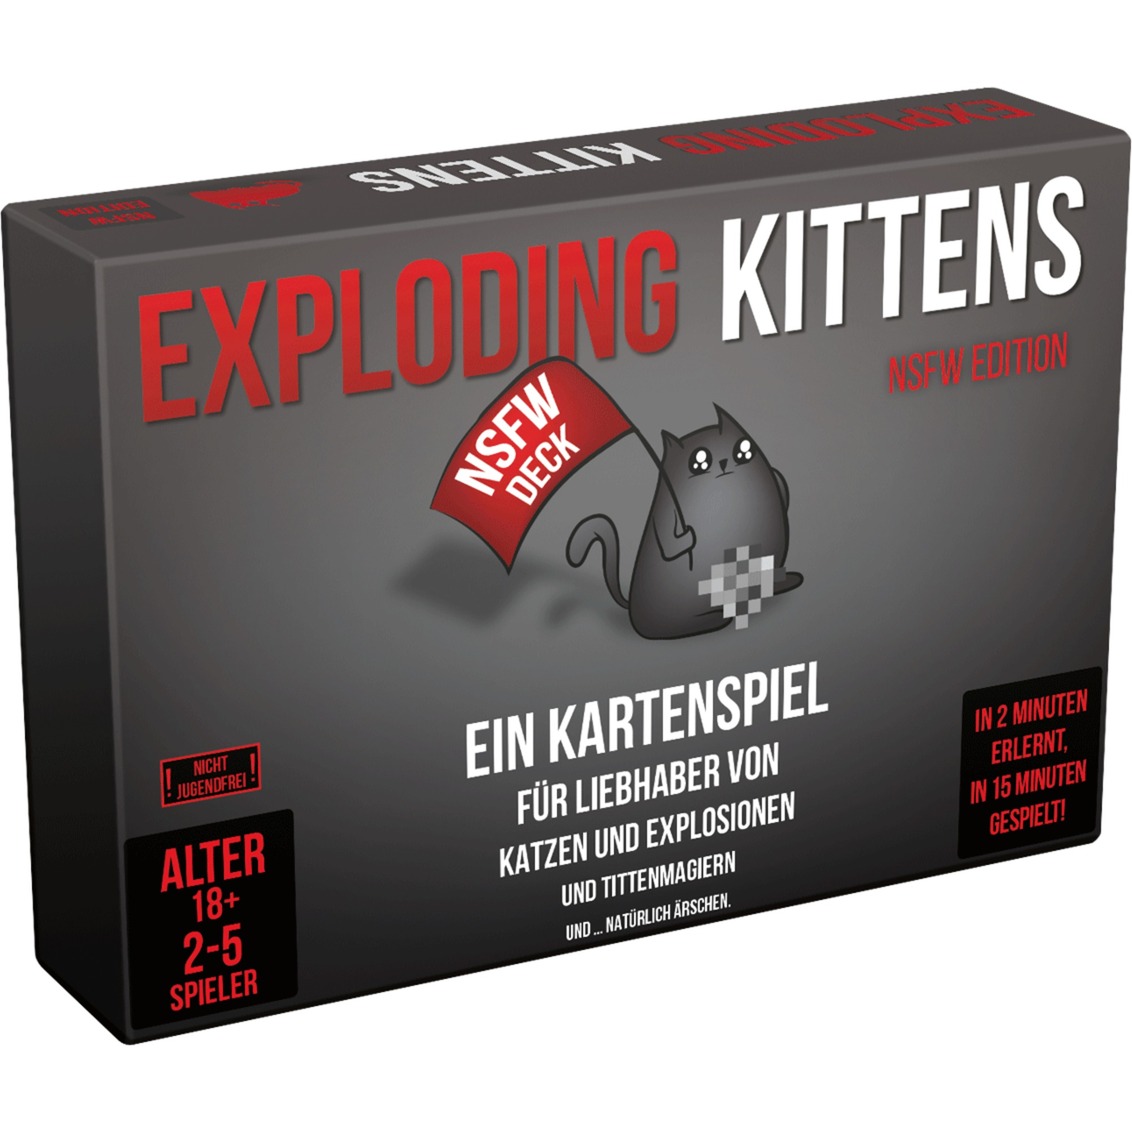 Image of Alternate - Exploding Kittens NSFW Edition, Kartenspiel online einkaufen bei Alternate